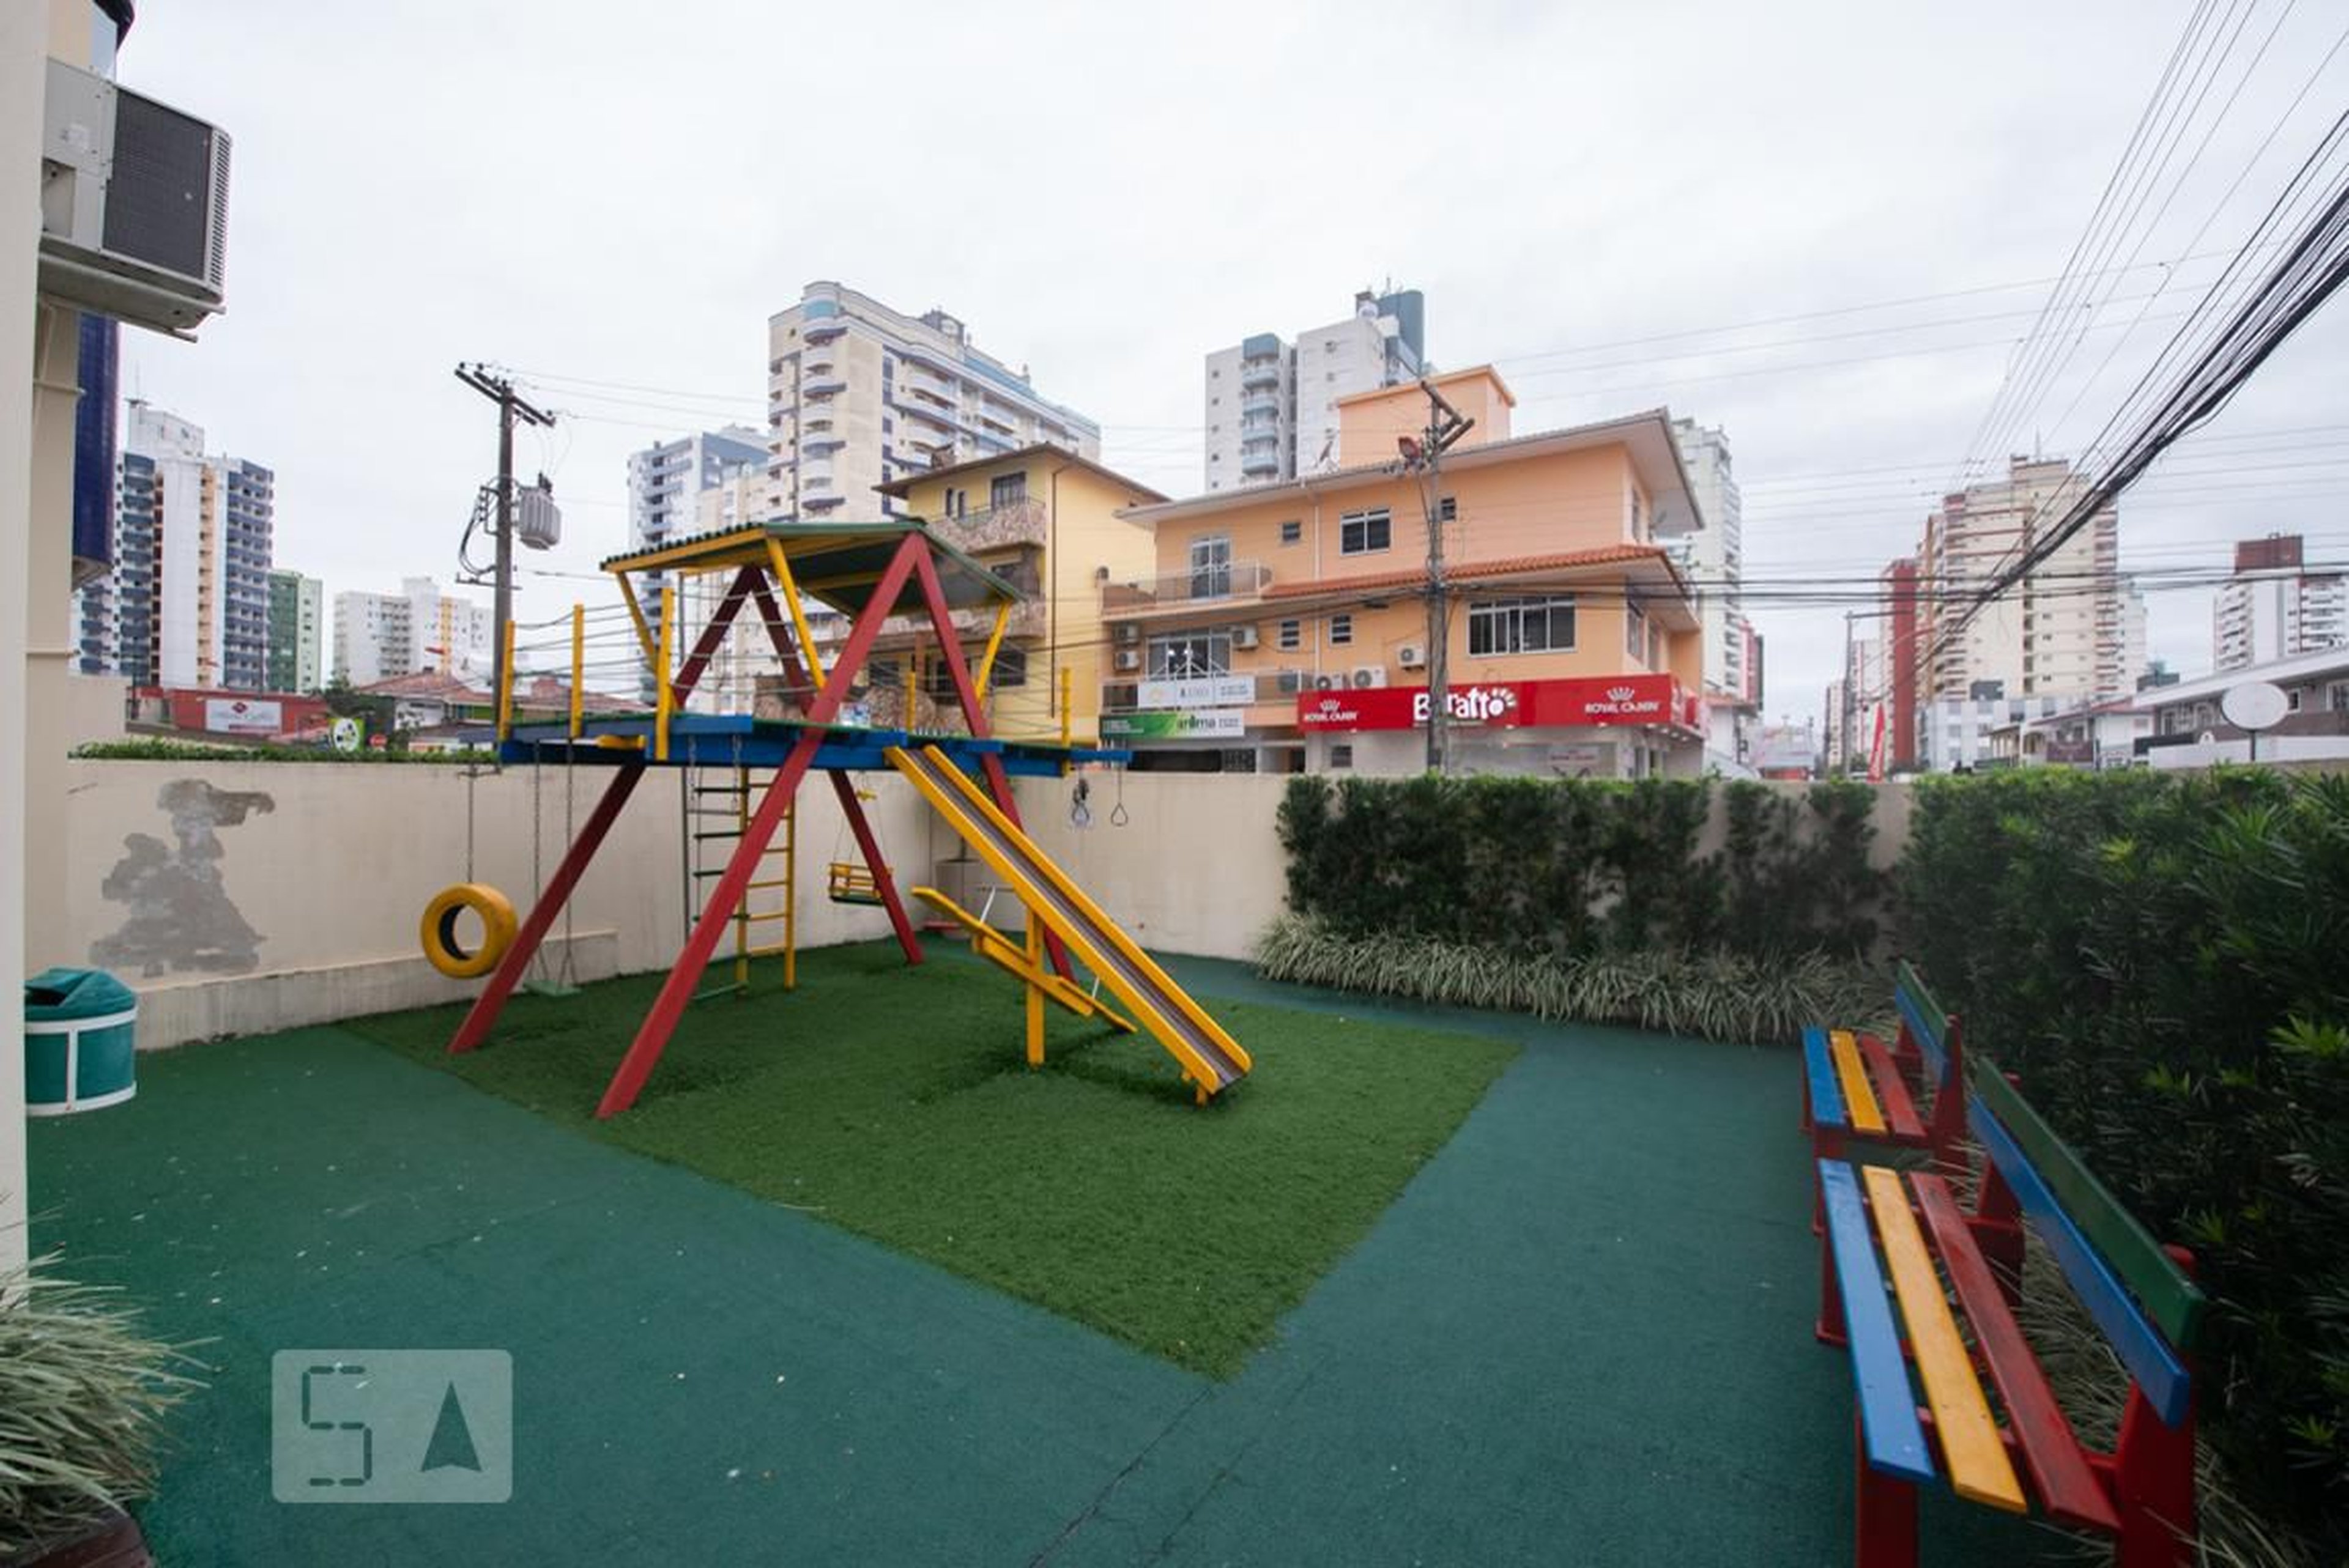 Playground - Parque dos Principes